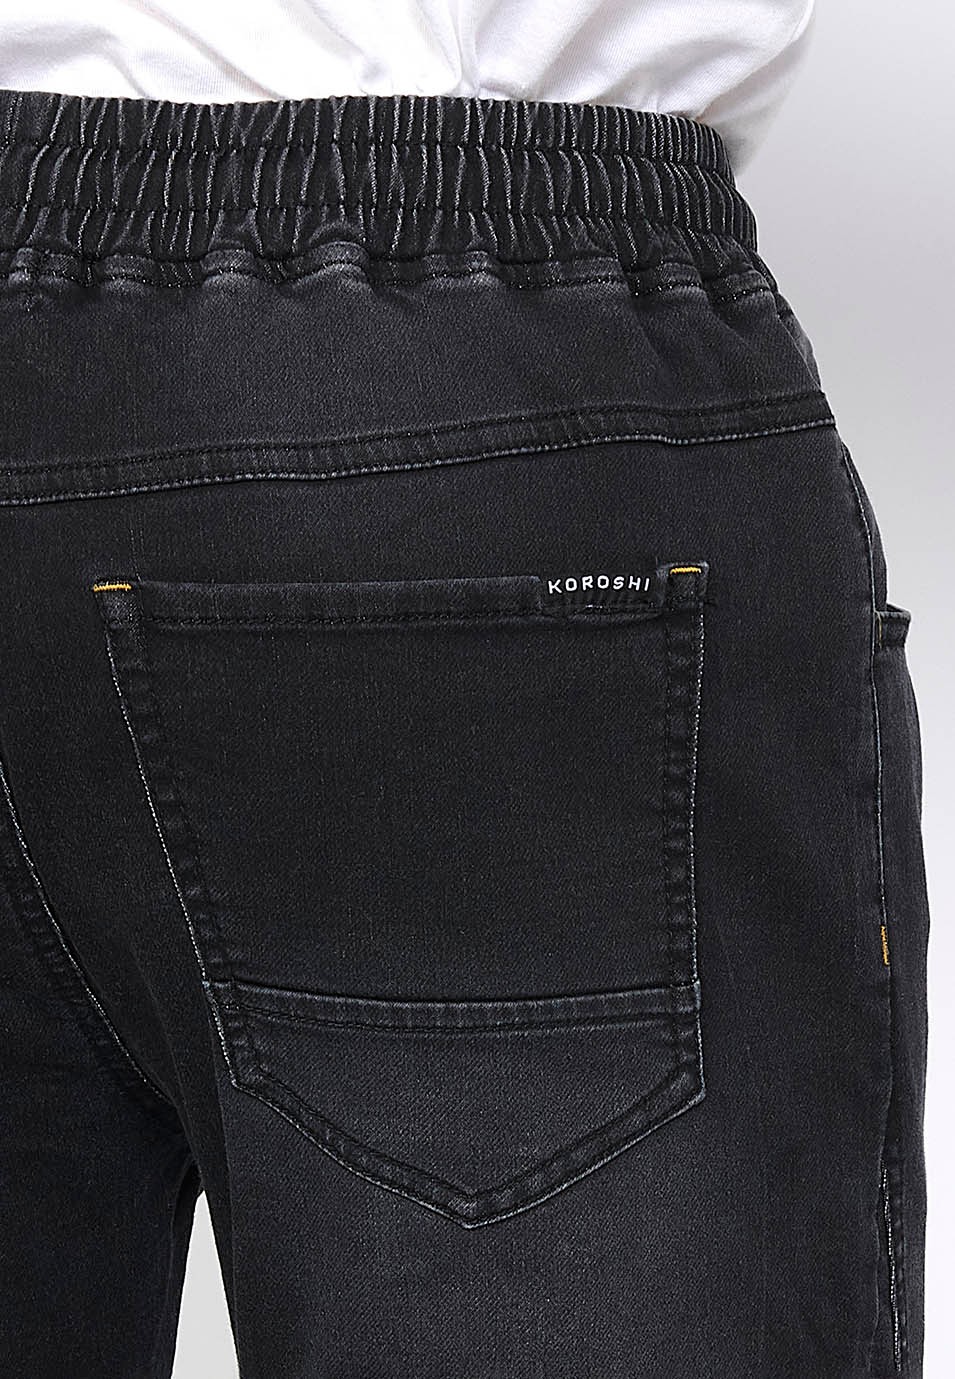 Pantalon de jogging long slim ajusté aux chevilles avec taille élastique réglable et cordon de serrage en Noir pour Homme 5